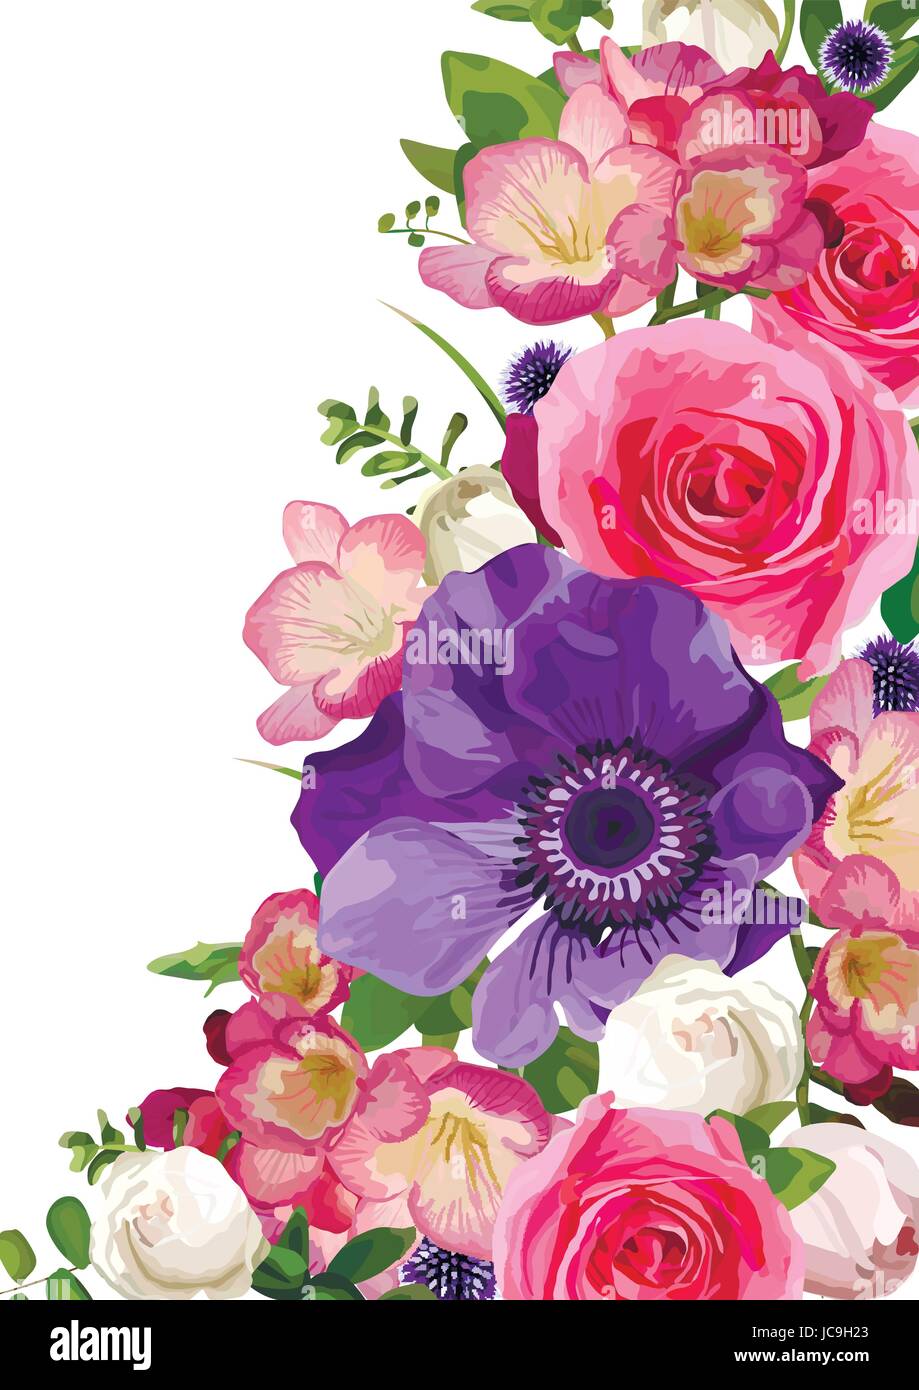 Fiore fiori luminosi hot rosa rosa Anemone thistle lascia bella bella primavera estate bouquet illustrazione vettoriale.Vista dall'alto piazza watercol elegante Illustrazione Vettoriale